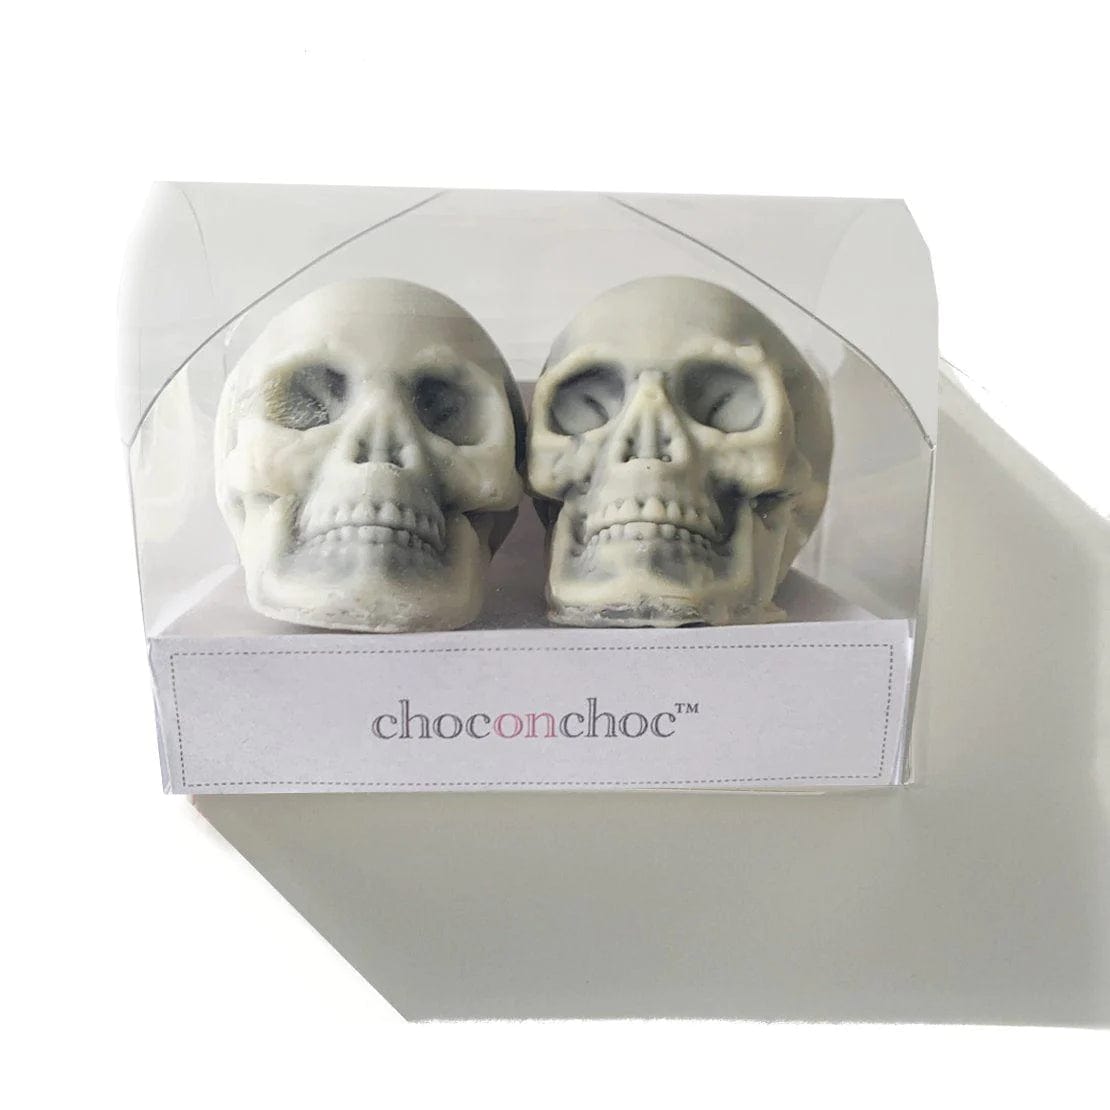 Choc On Choc Chocolate Skull Set